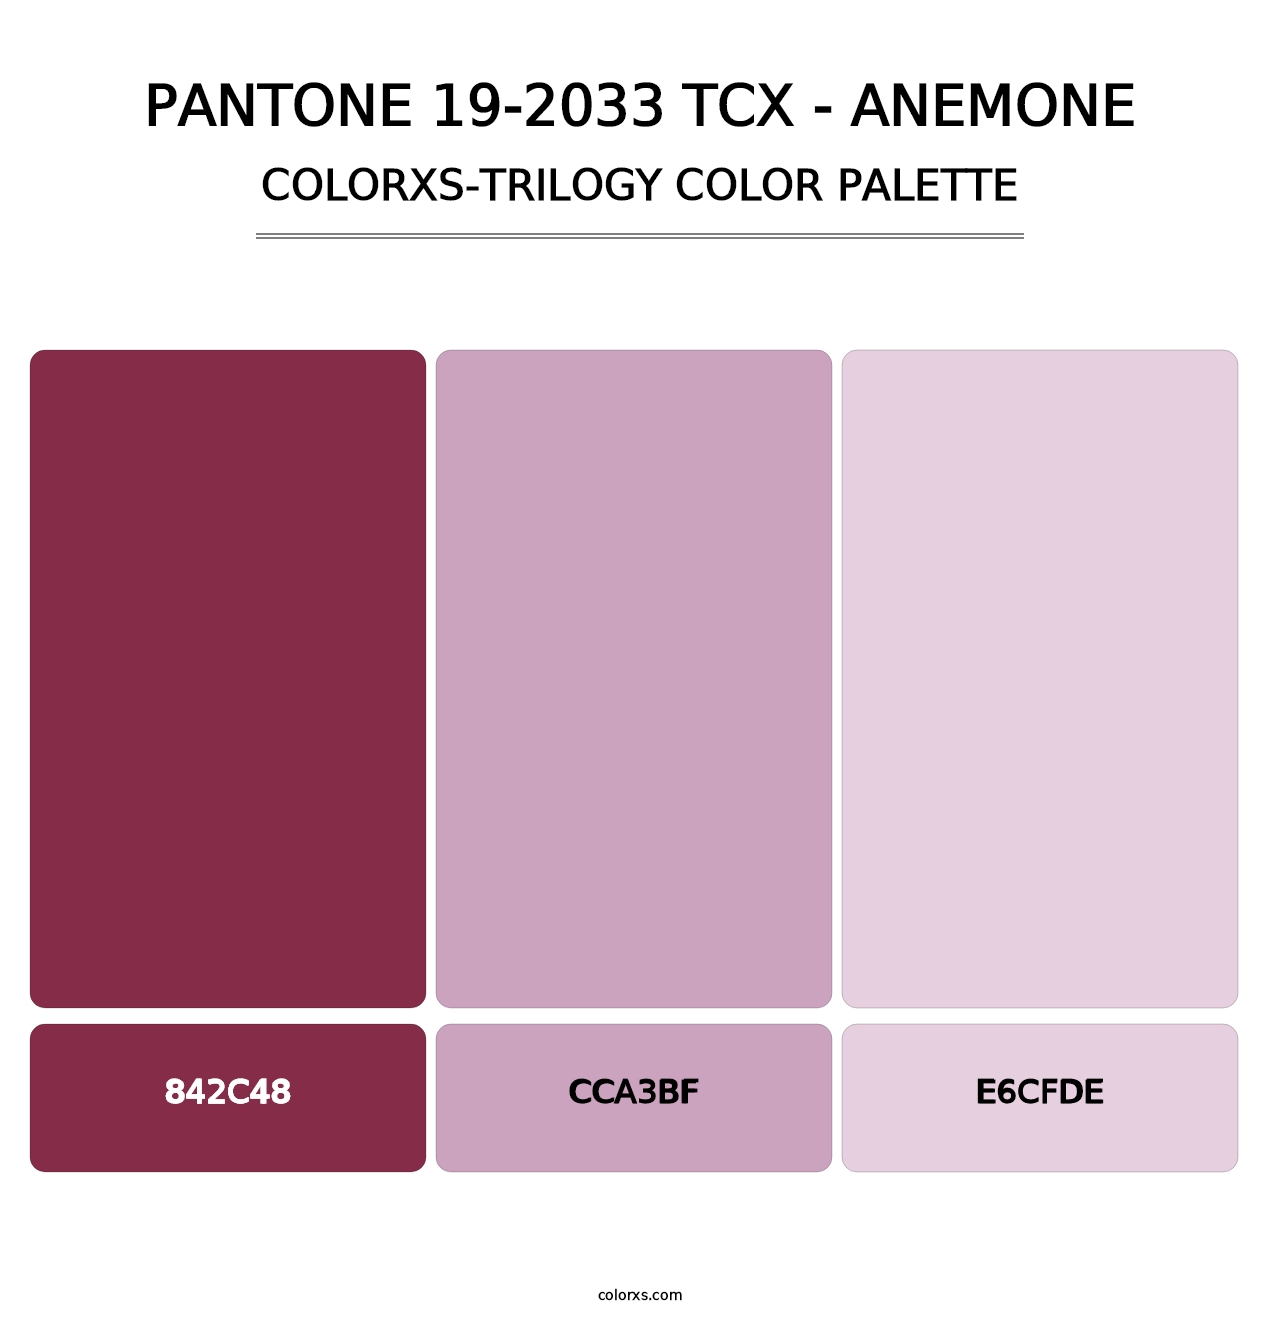 PANTONE 19-2033 TCX - Anemone - Colorxs Trilogy Palette